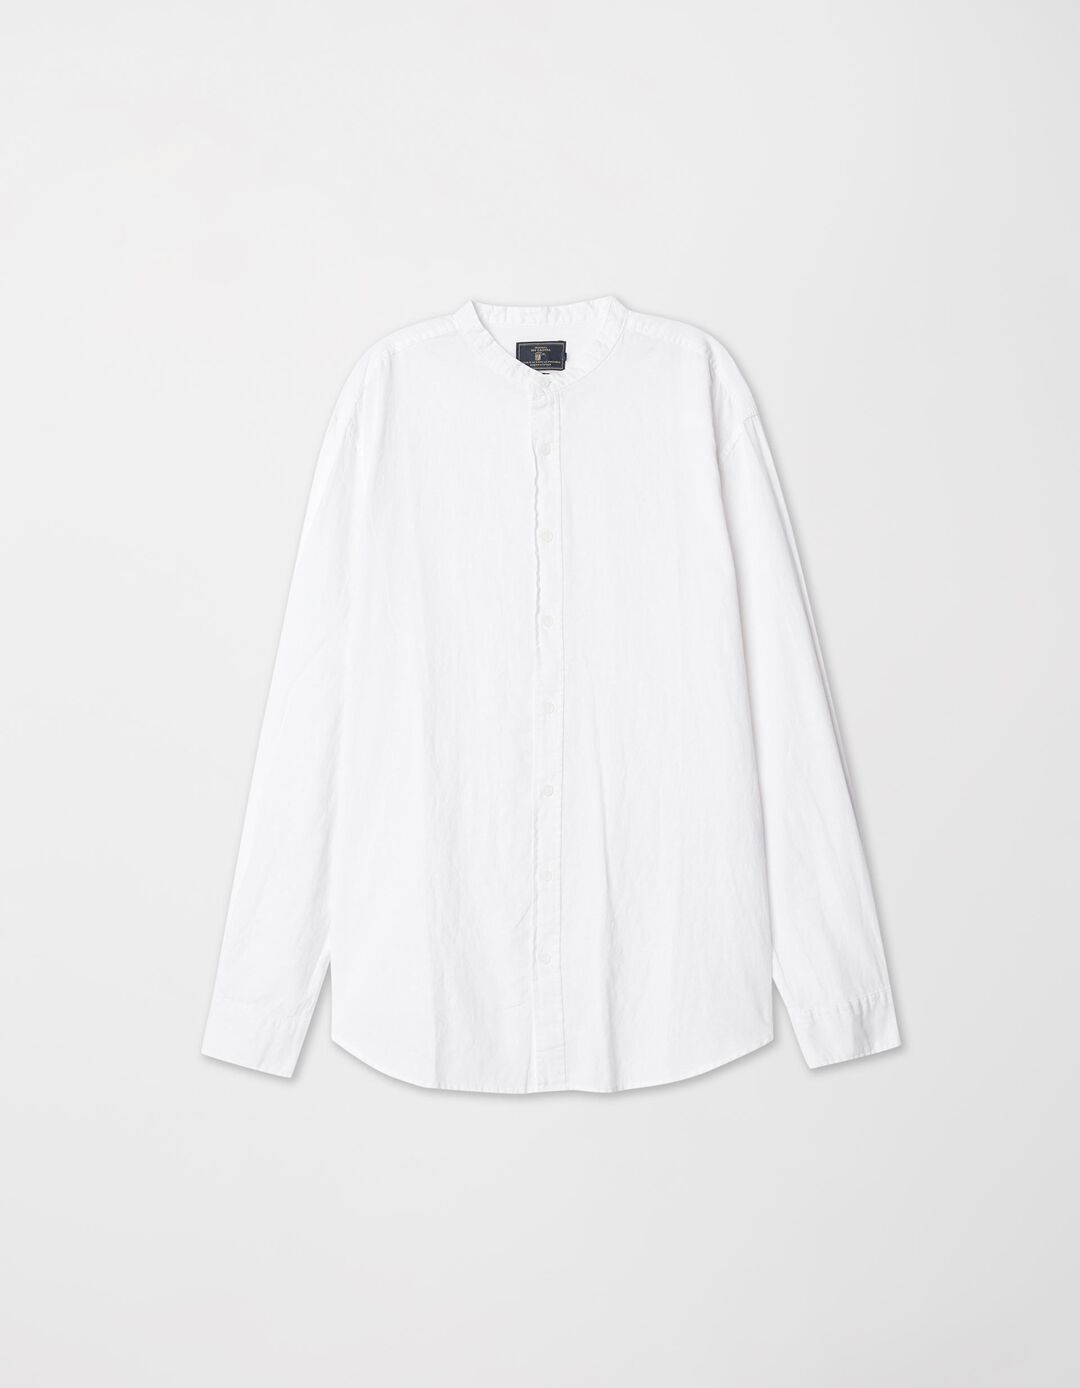 Camisa Gola Mao Mistura de Linho, Homem, Branco